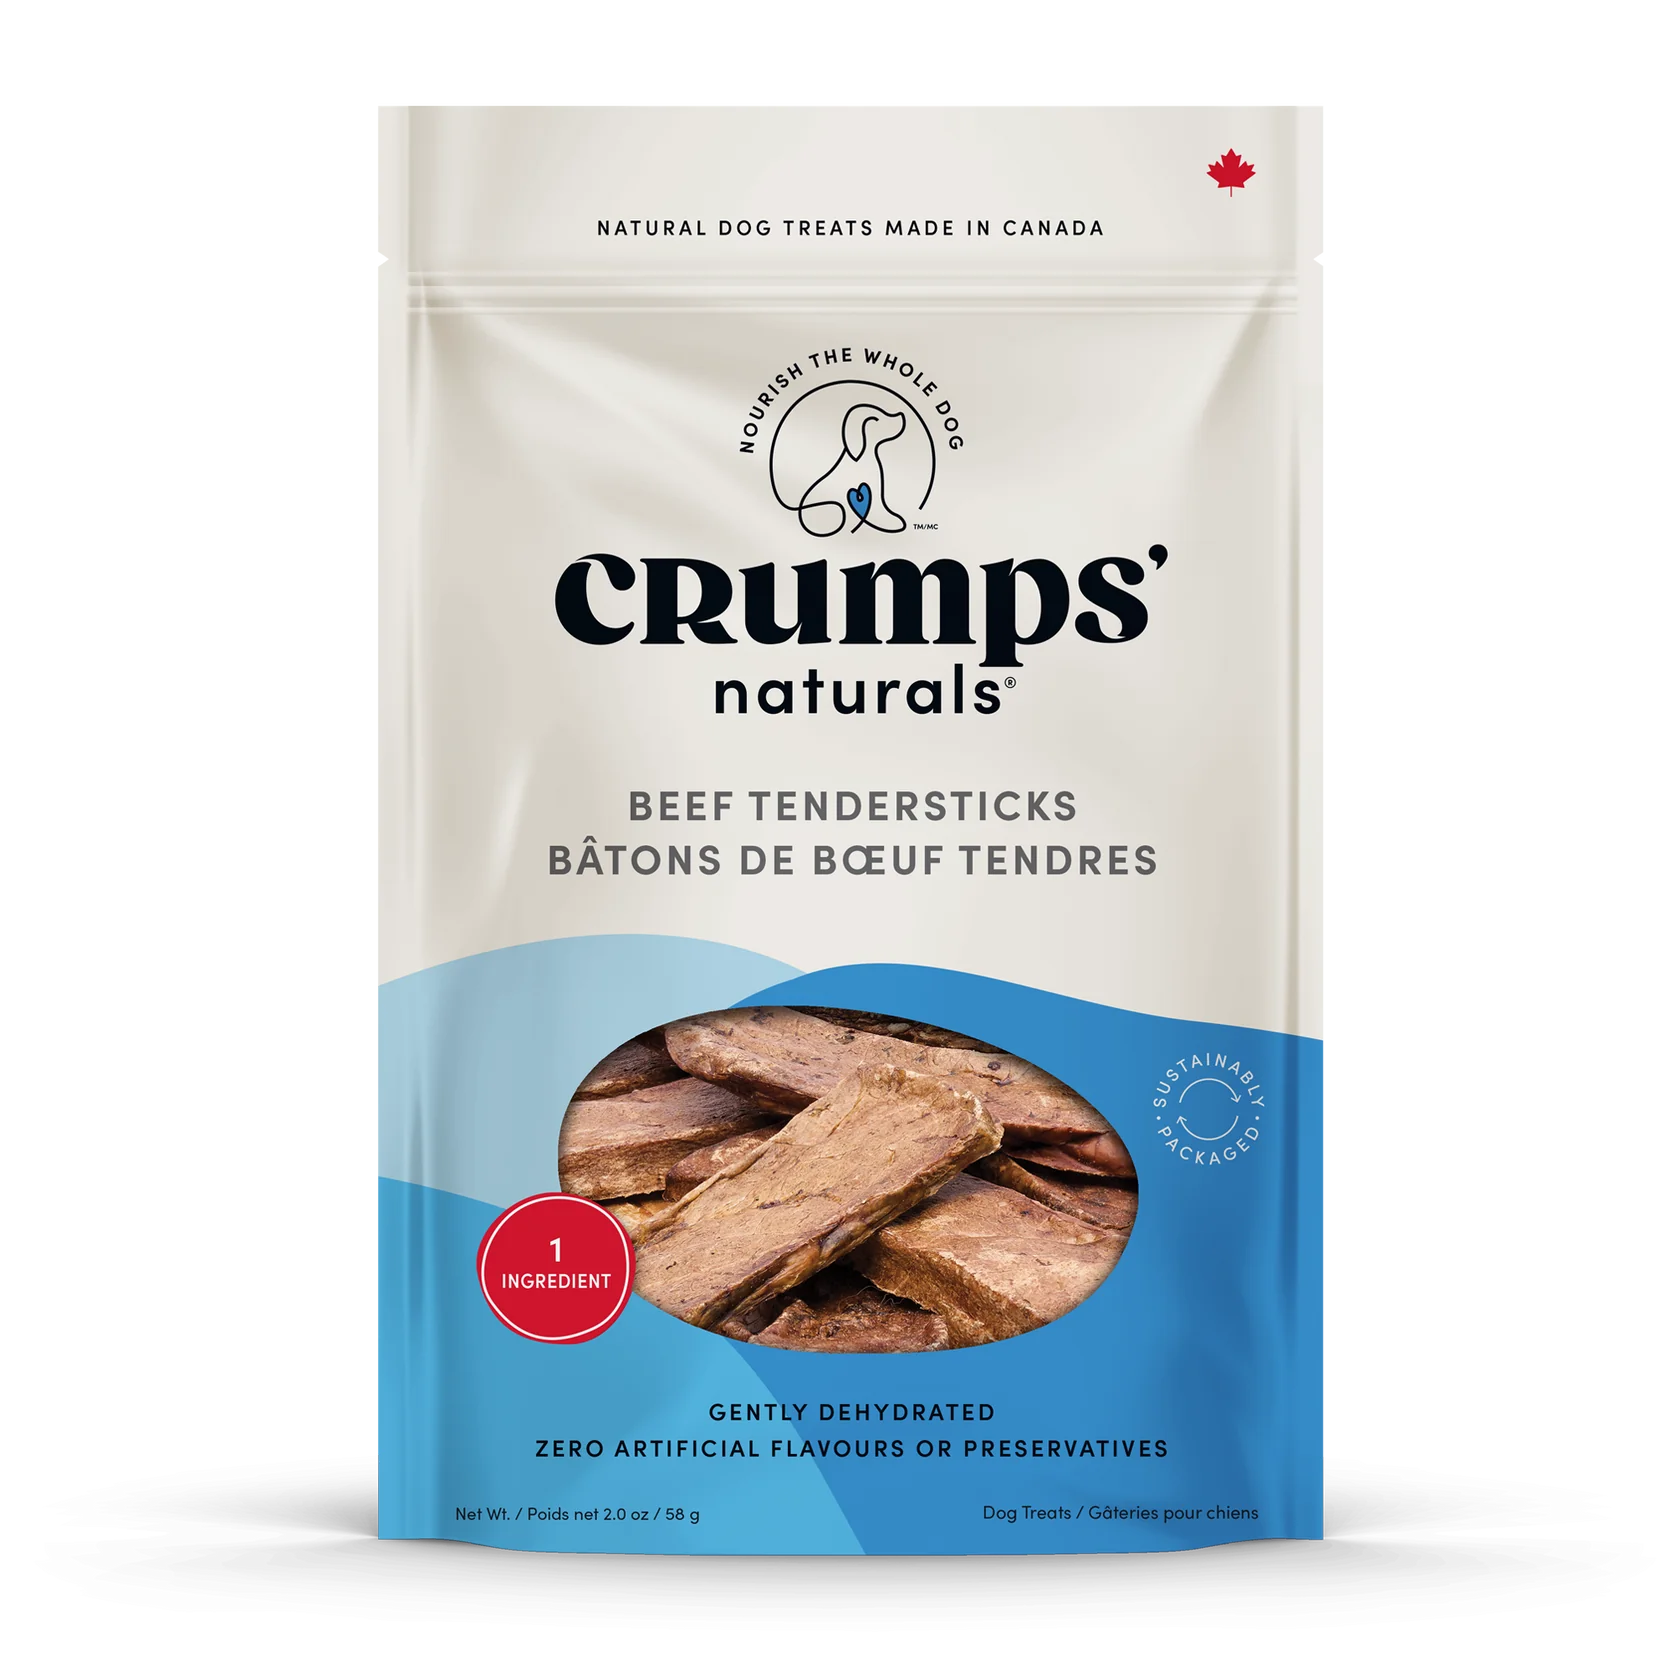 Crumps' Naturals - Beef Tendersticks Treat